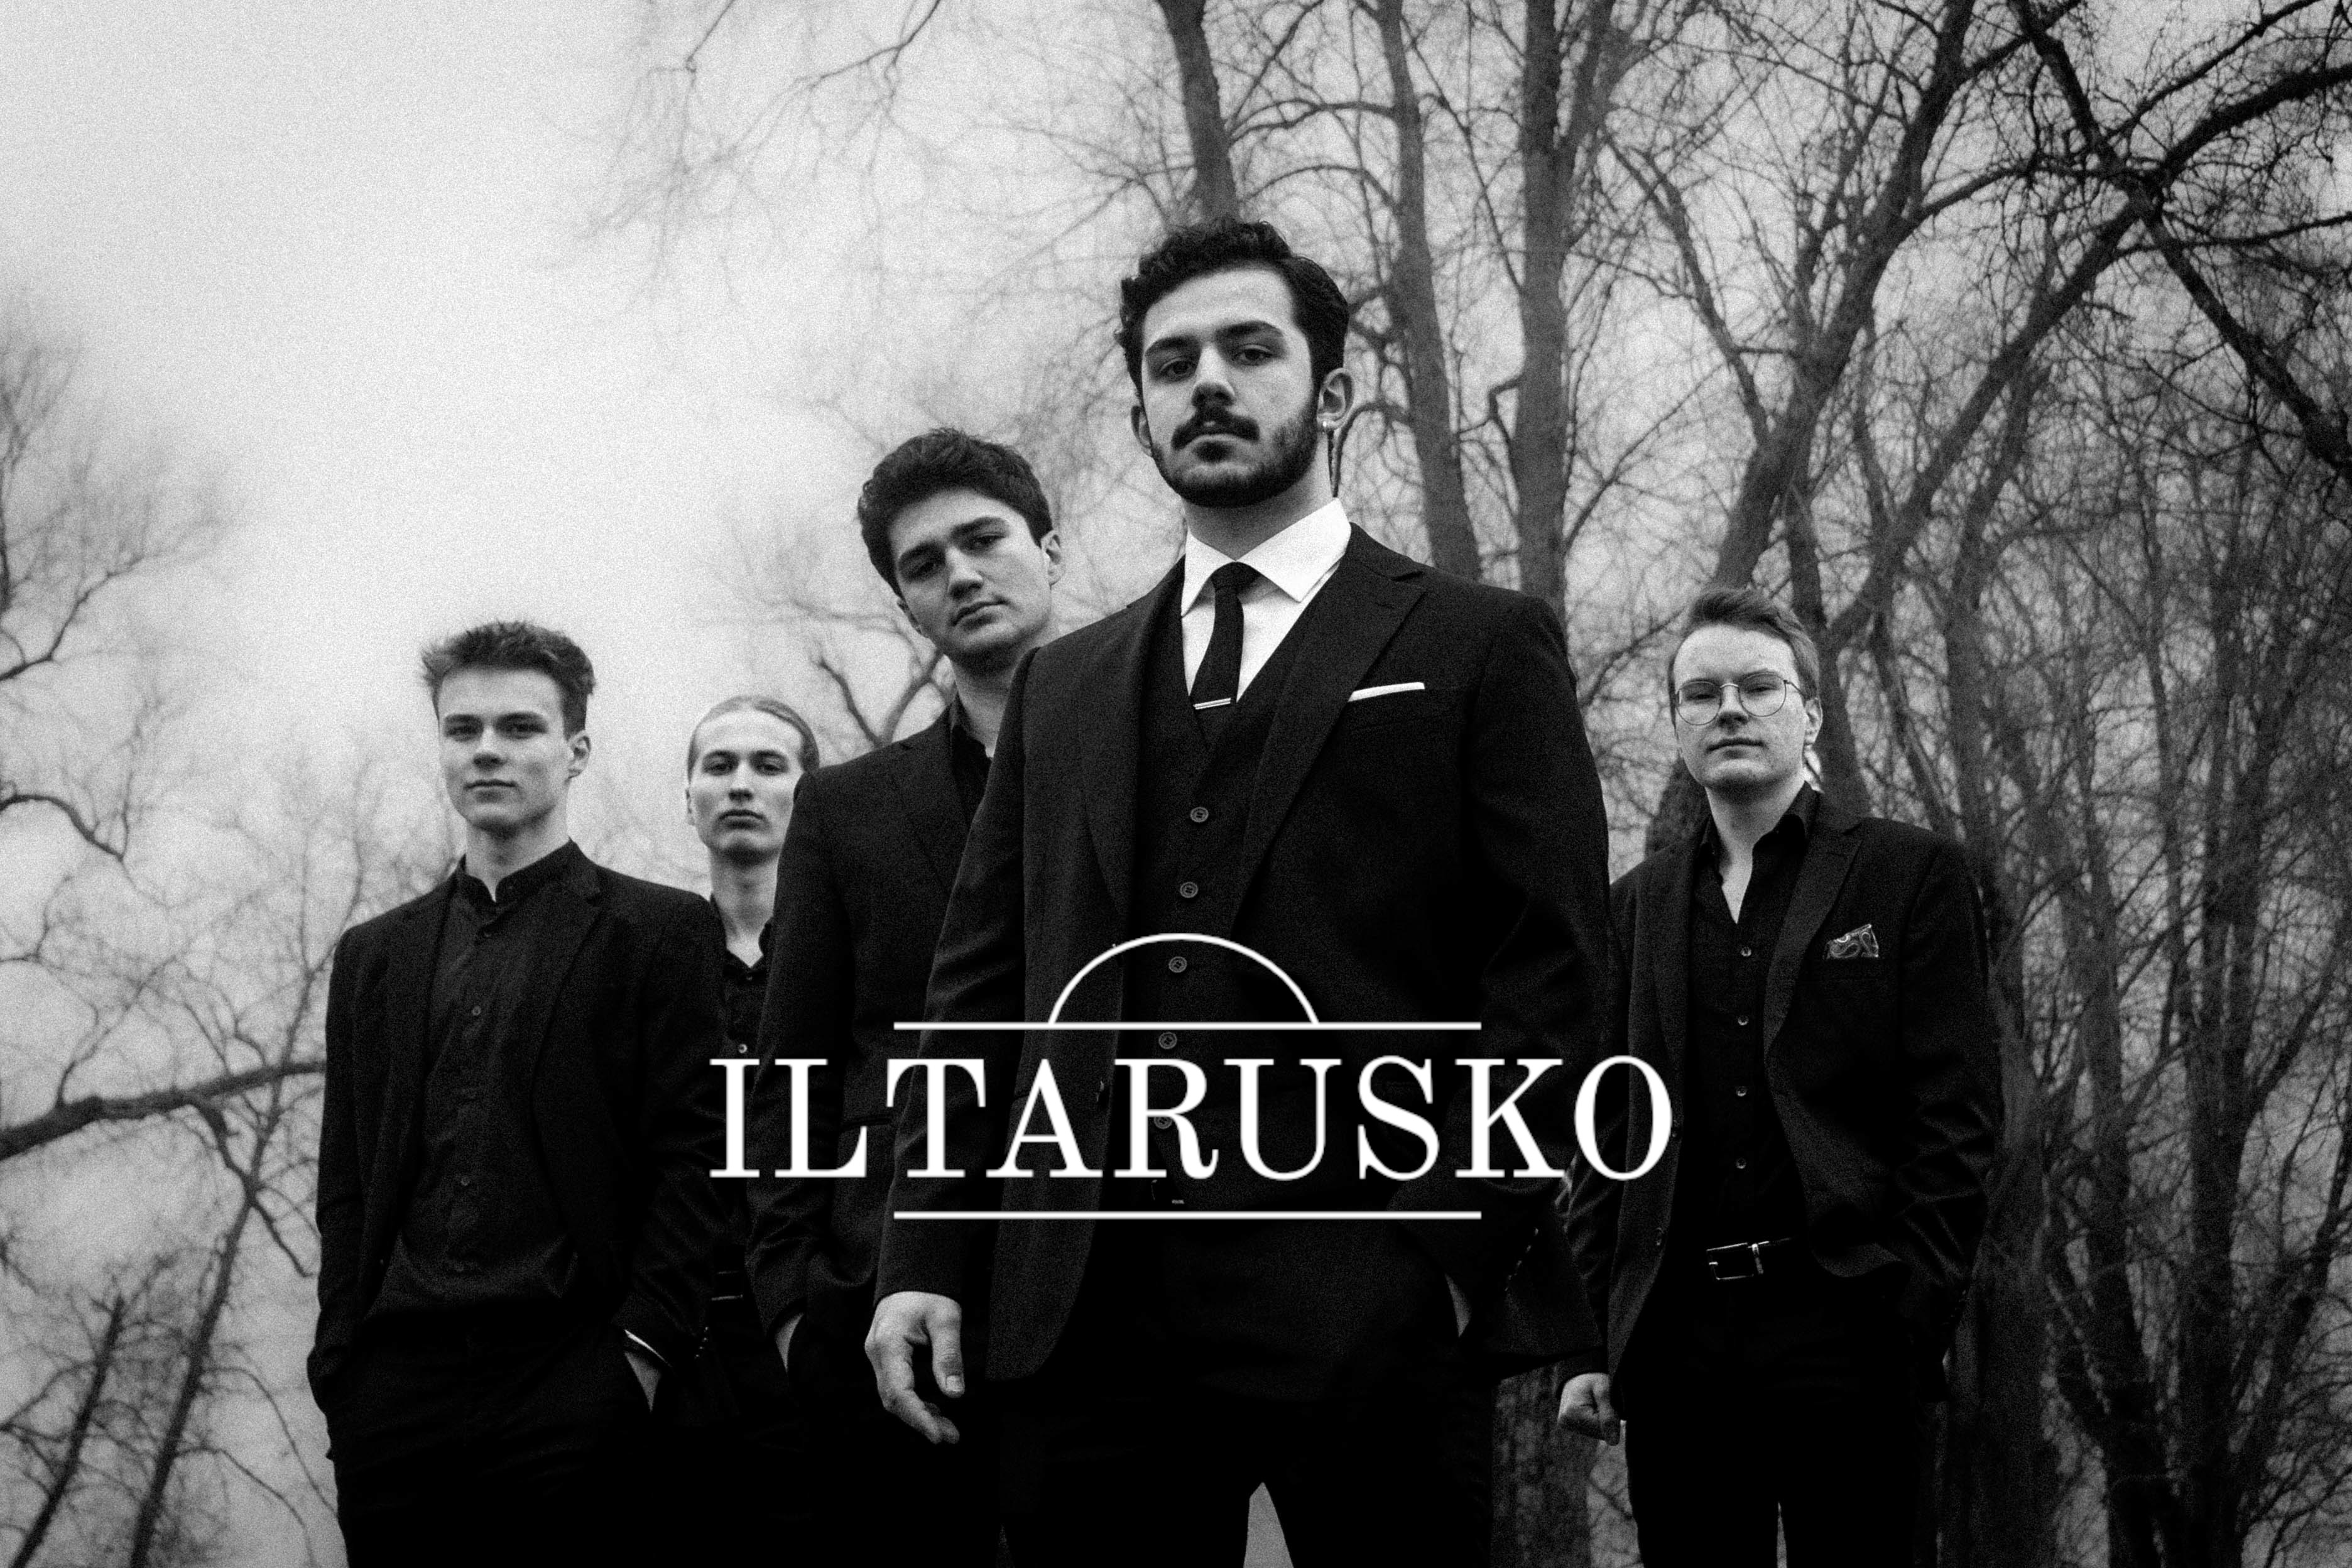 Iltarusko-yhtye, kuvan päällä lukee Iltarusko.